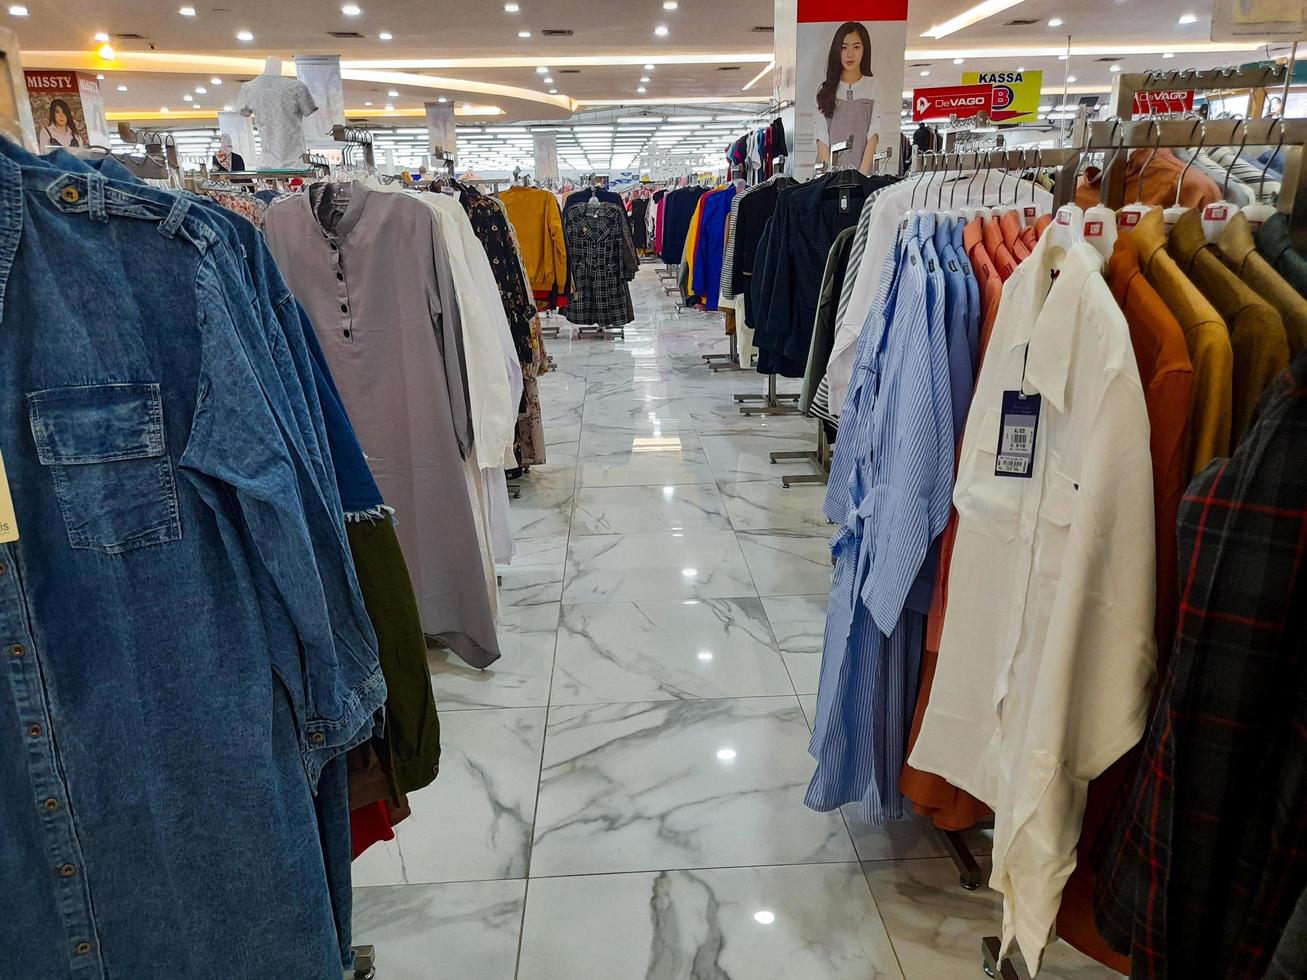 jombang, east java, indonesia, 2022 - fileiras de roupas femininas e masculinas, como camisas, vestidos, calças, saias, de várias marcas. retrato de exibição de produtos de vestuário em um shopping center foto